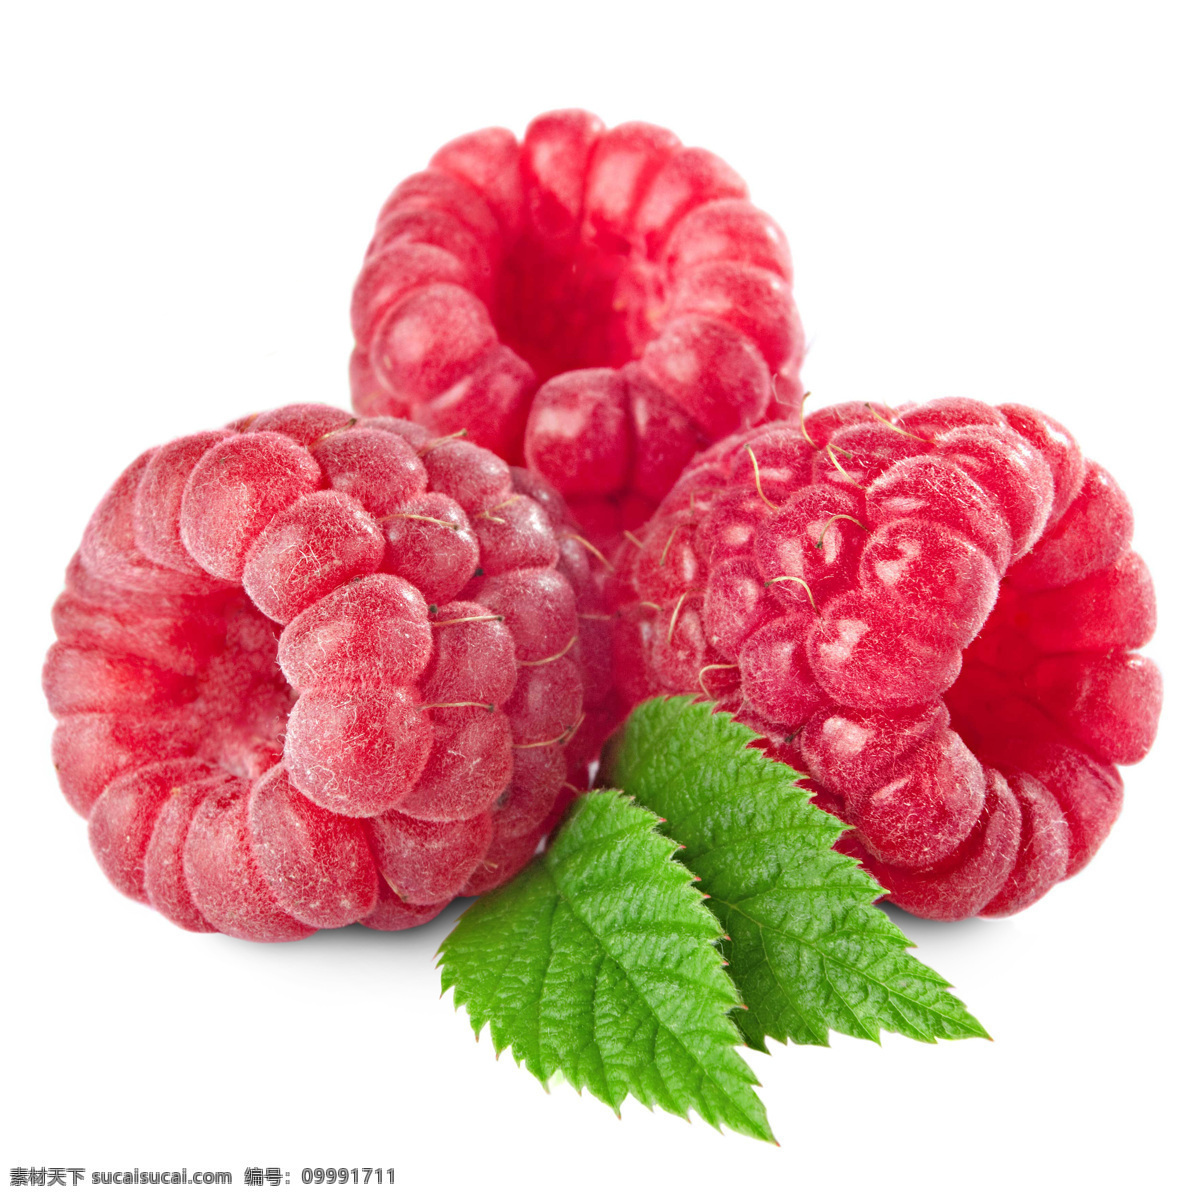 高清水果摄影 树莓 食物 新鲜水果 水果 水果摄影 水果素材 水果广告 广告素材 水果蔬菜 餐饮美食 白色